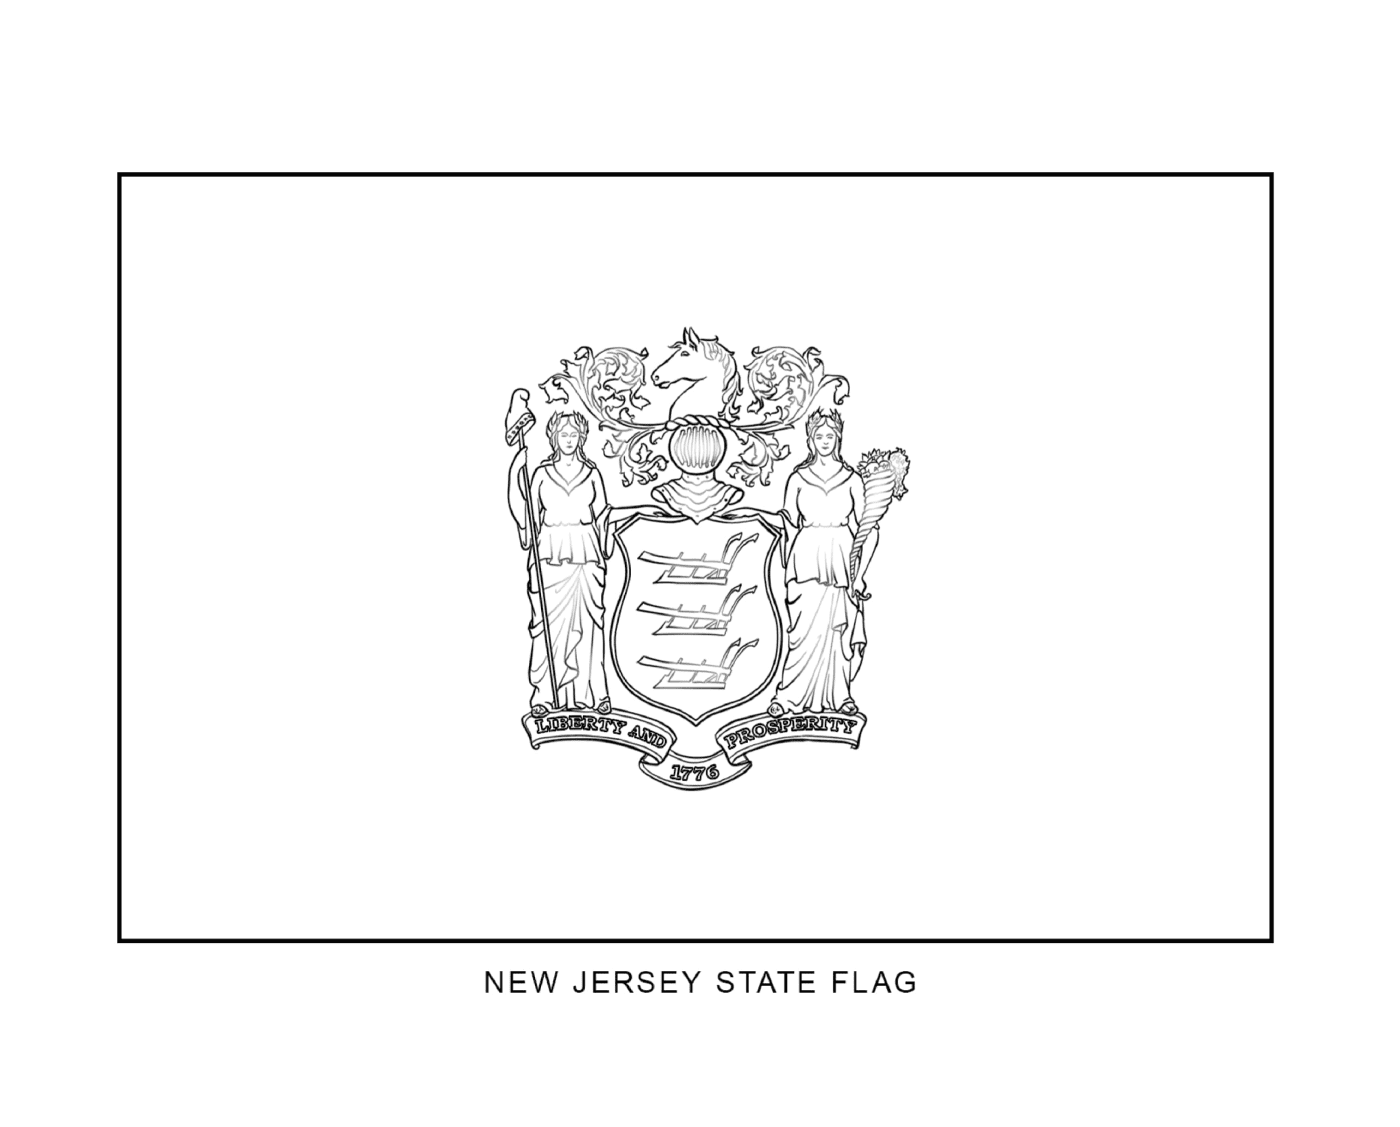  Флаг штата Нью-Джерси в черно-белом виде 